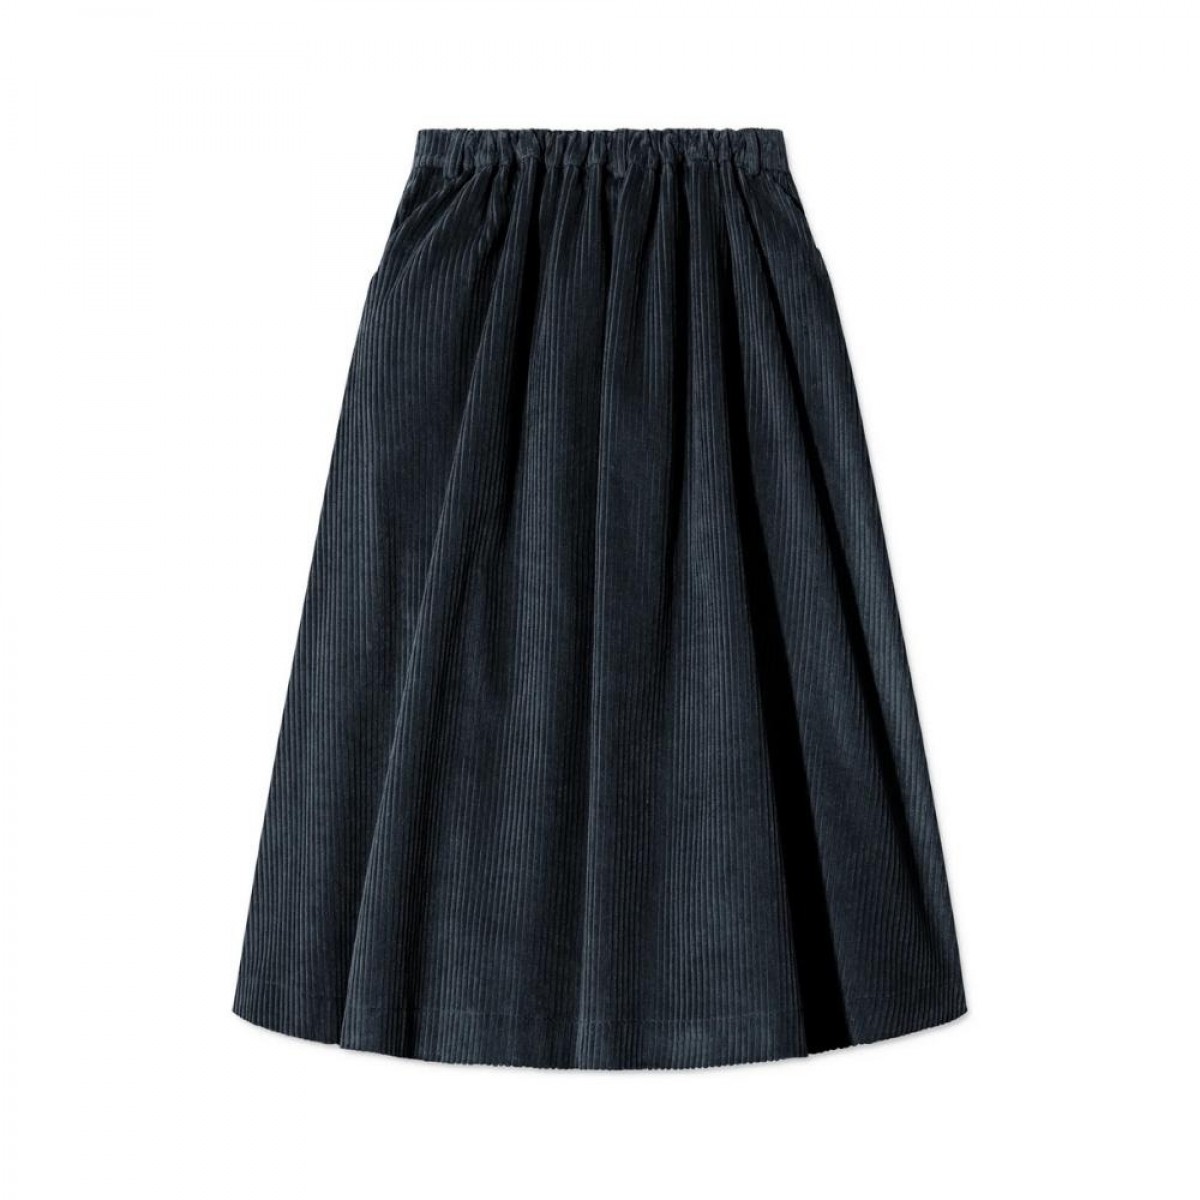 pen skirt - navy - bagfra 